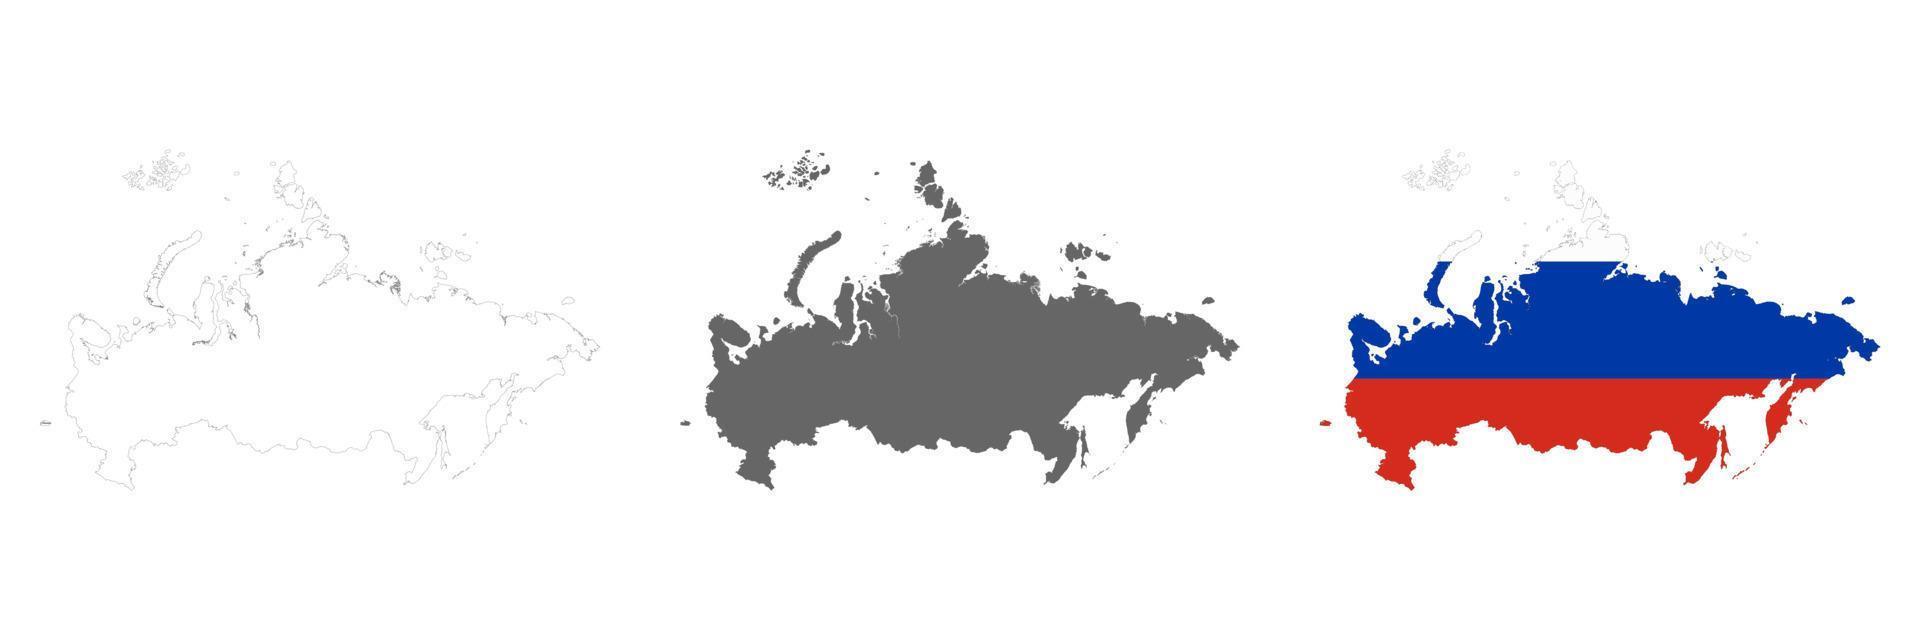 mycket detaljerad ryska federationskarta med gränser isolerade på bakgrunden vektor